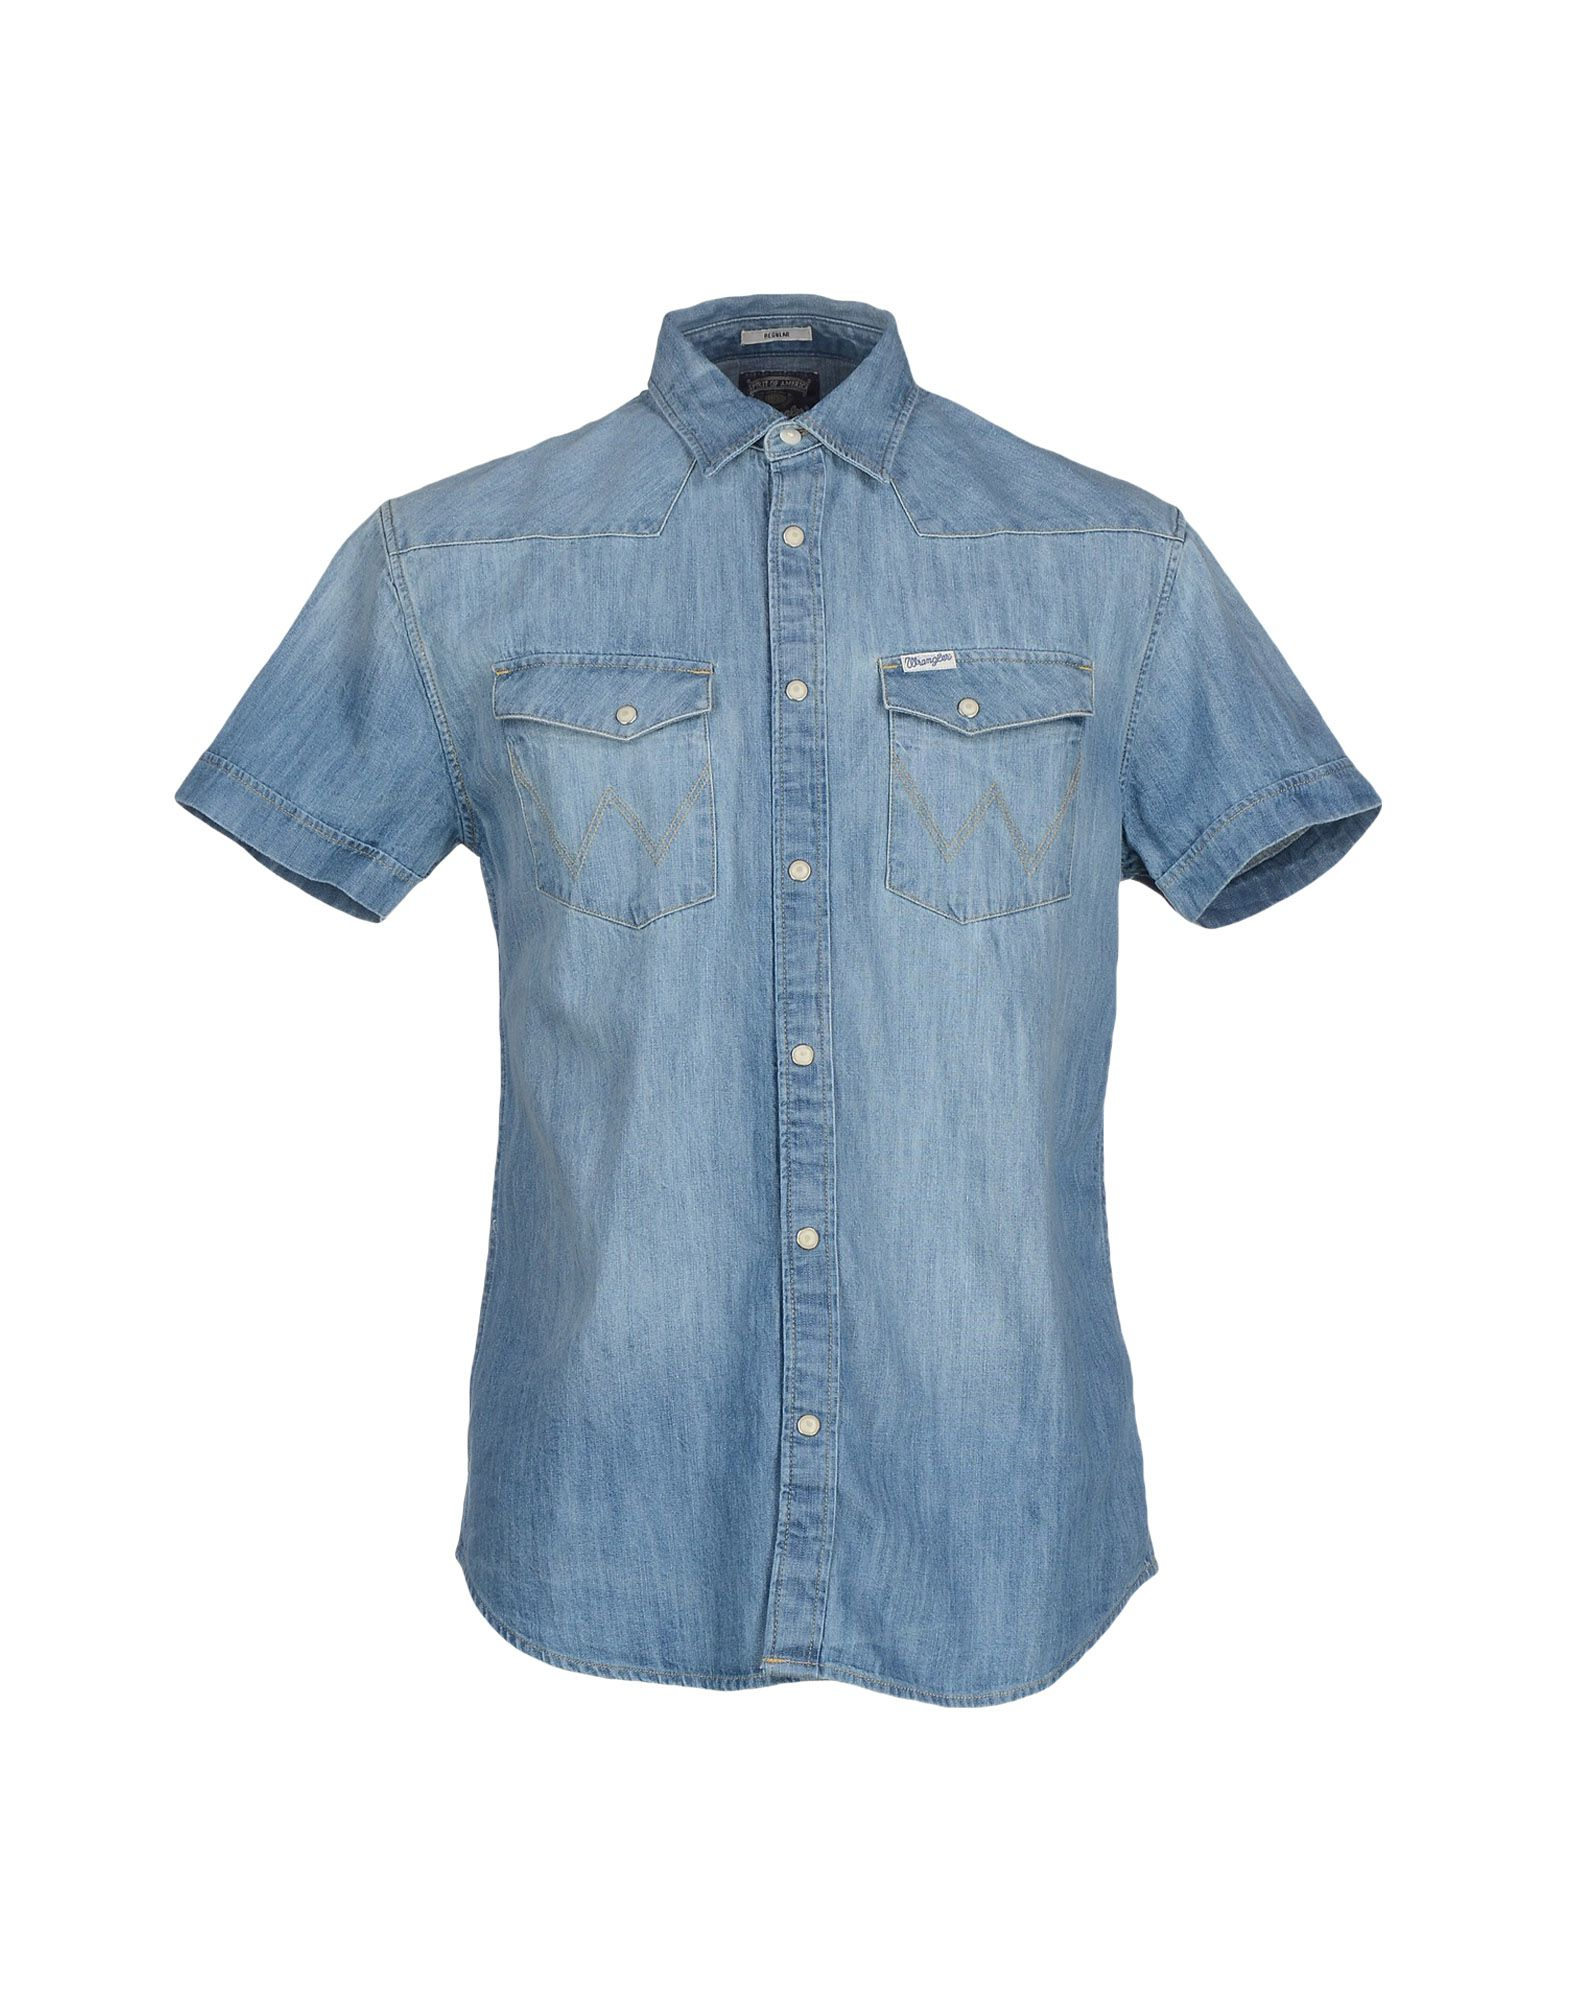 Wrangler Denim Shirt in Blue for Men - Lyst